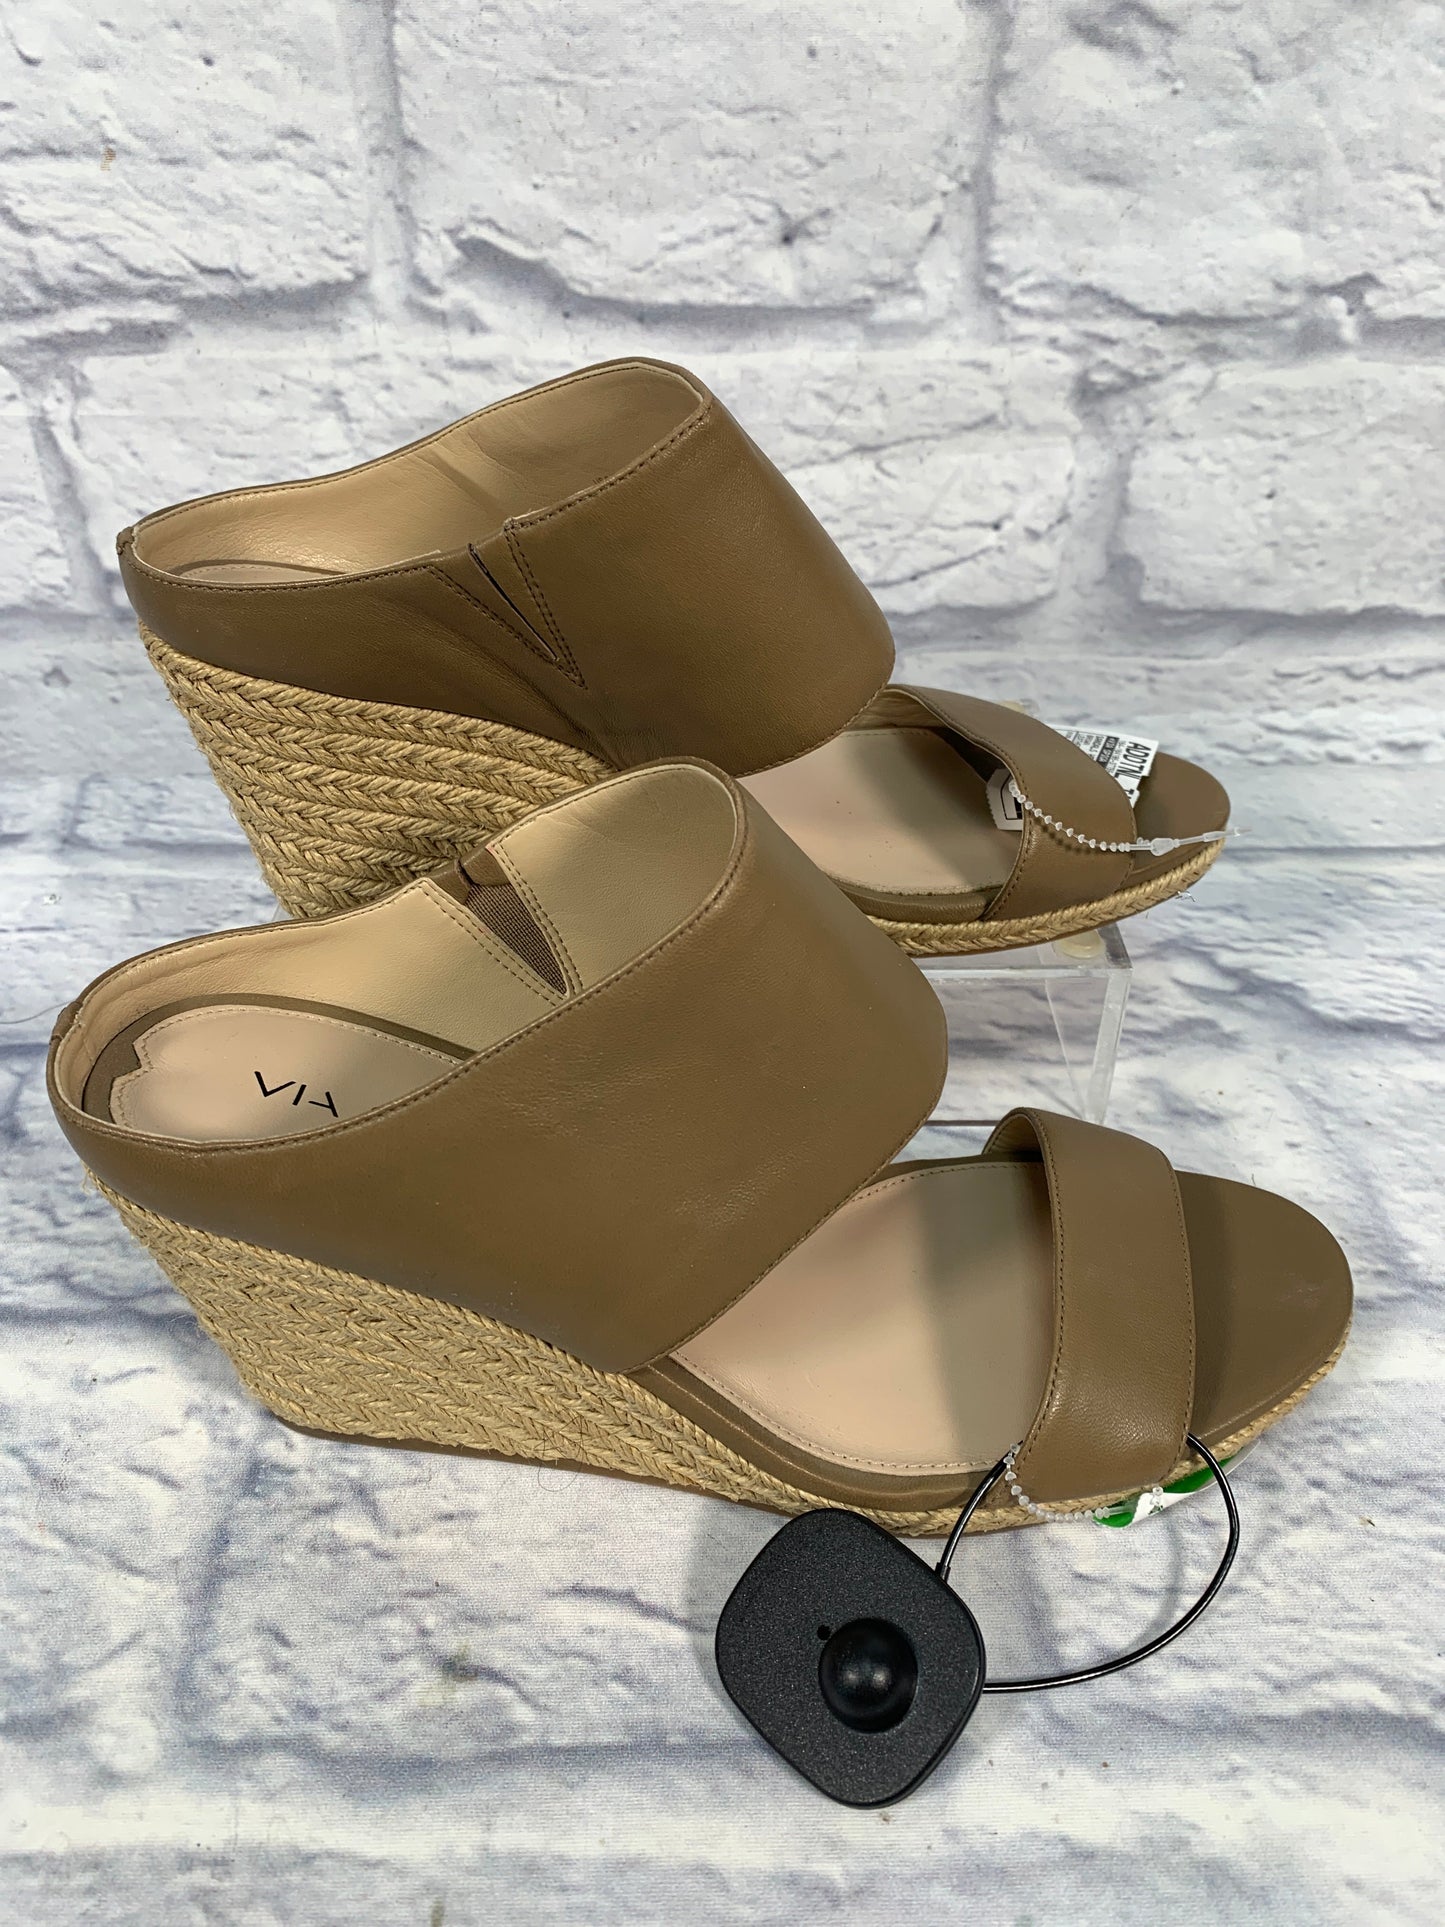 Sandals Heels Wedge By Via Spiga  Size: 9.5